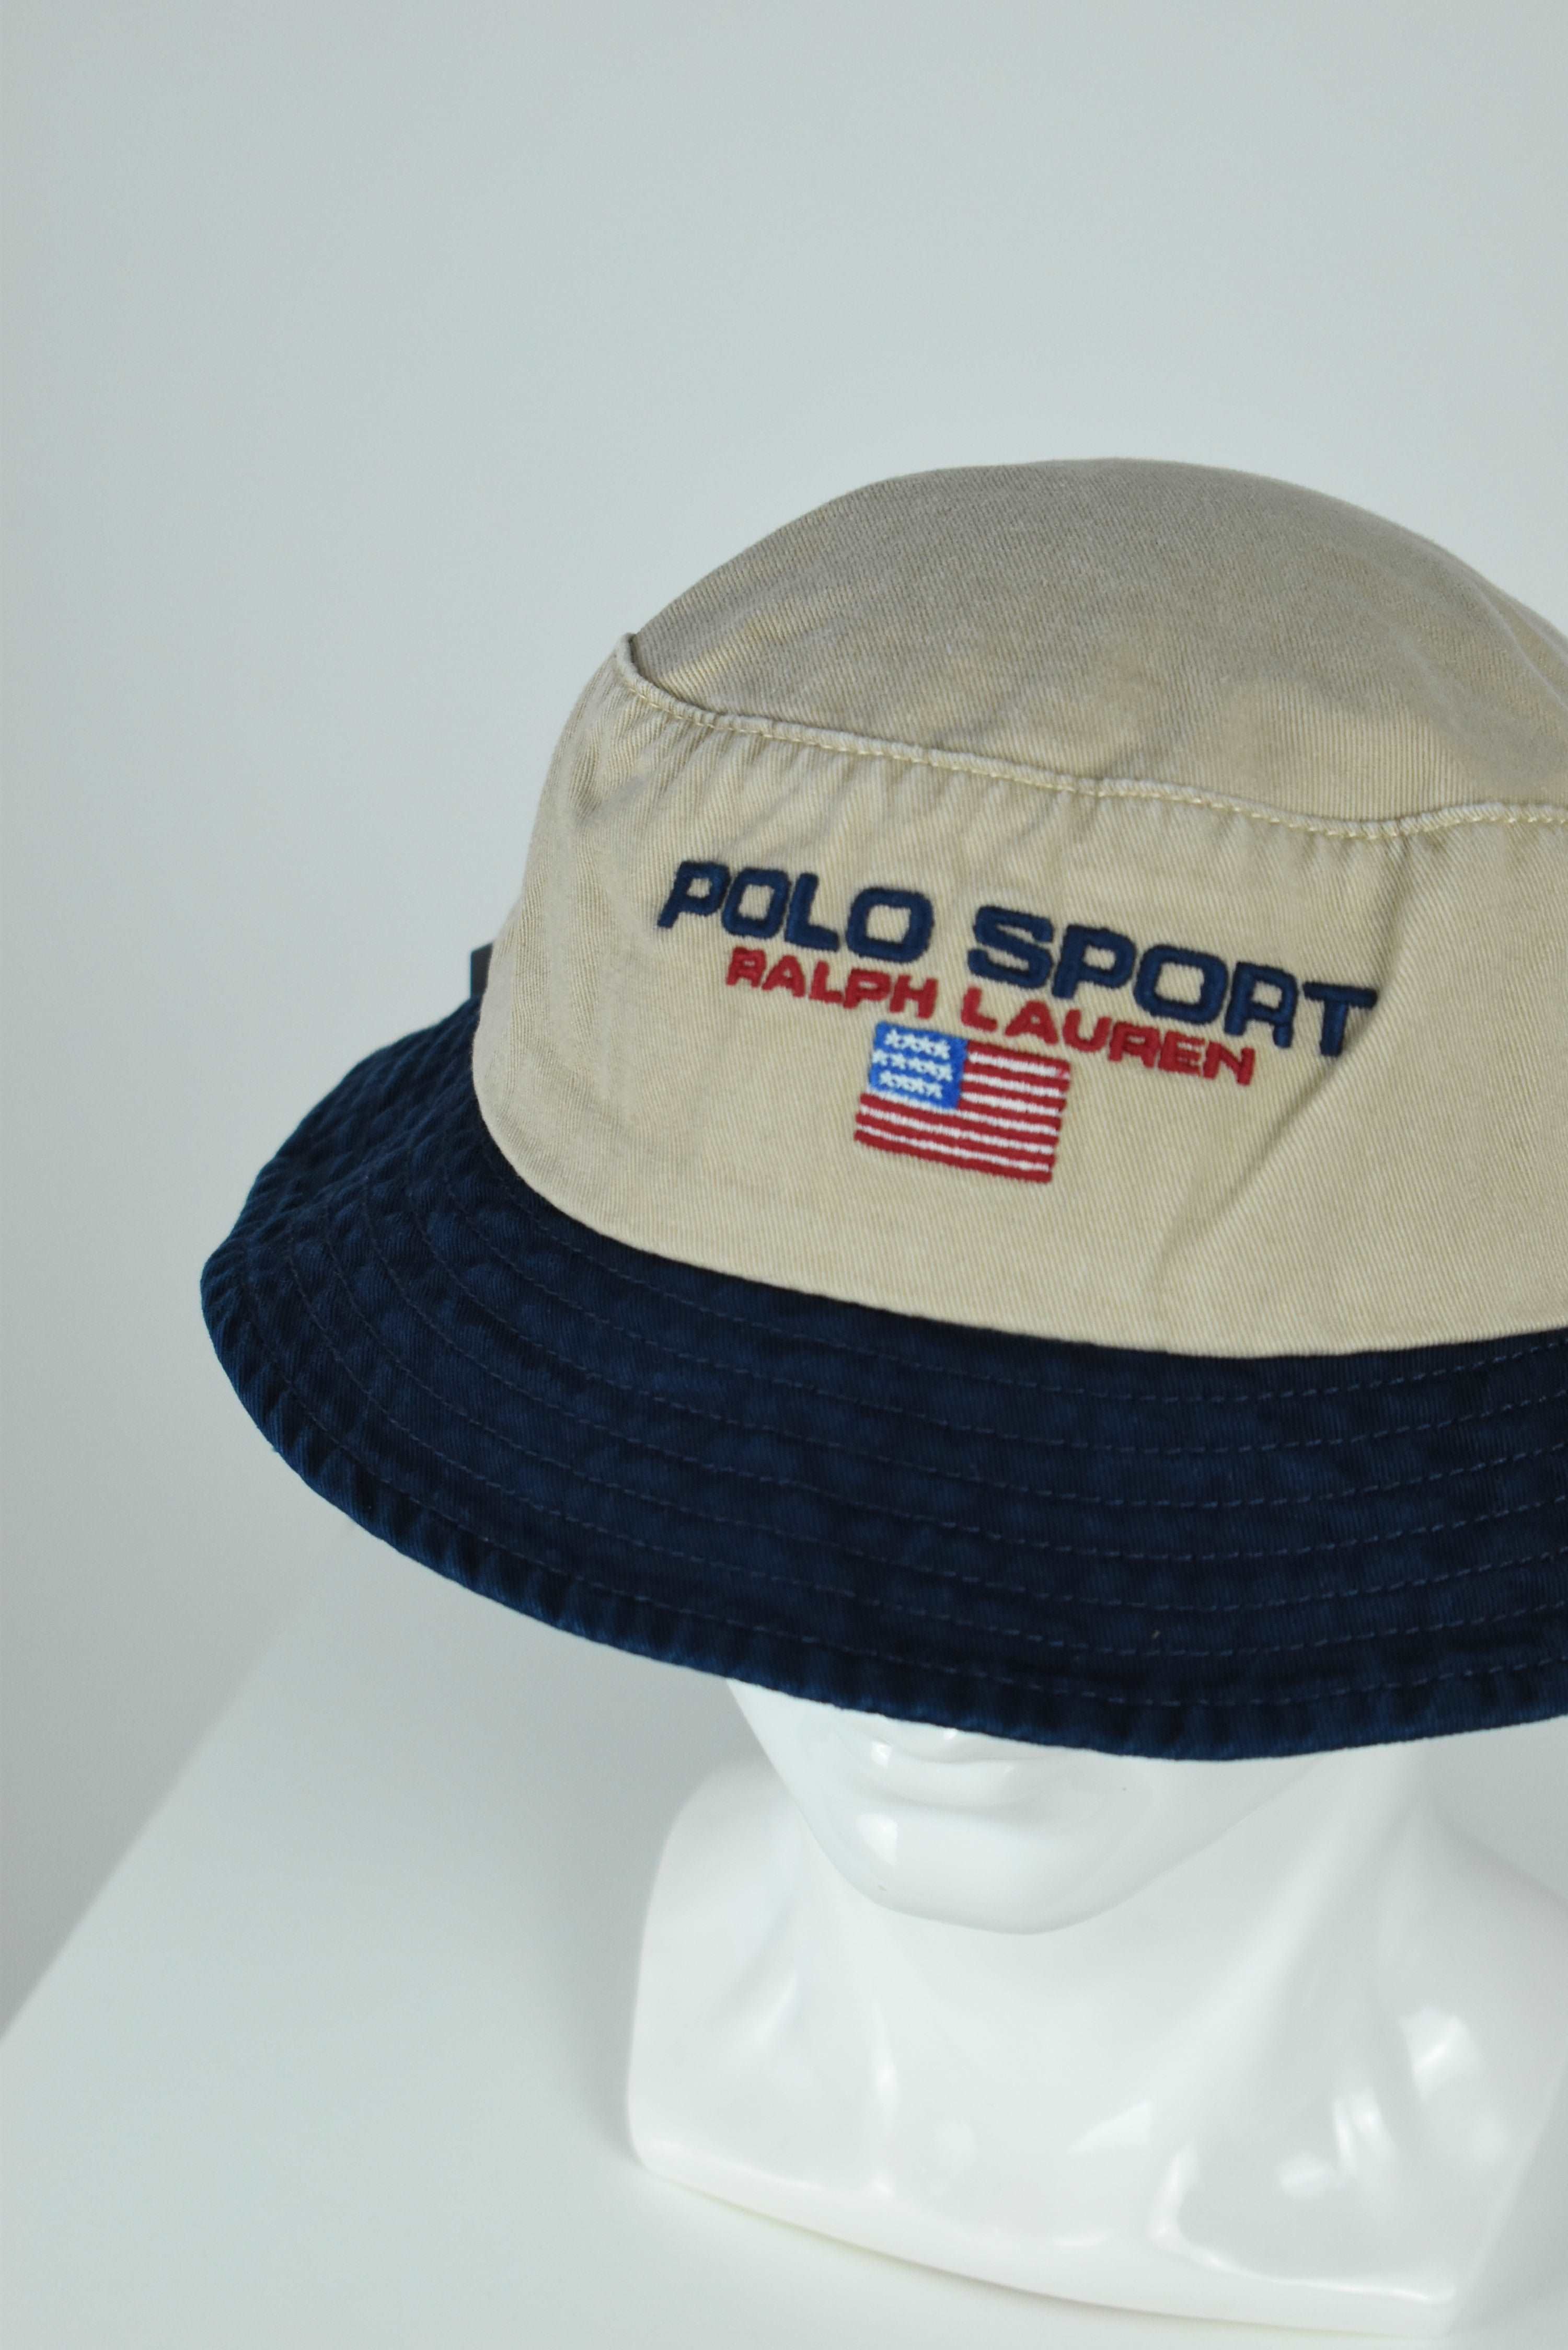 New Ralph Lauren Polo Sport Bucket Hat Beige/Navy OS